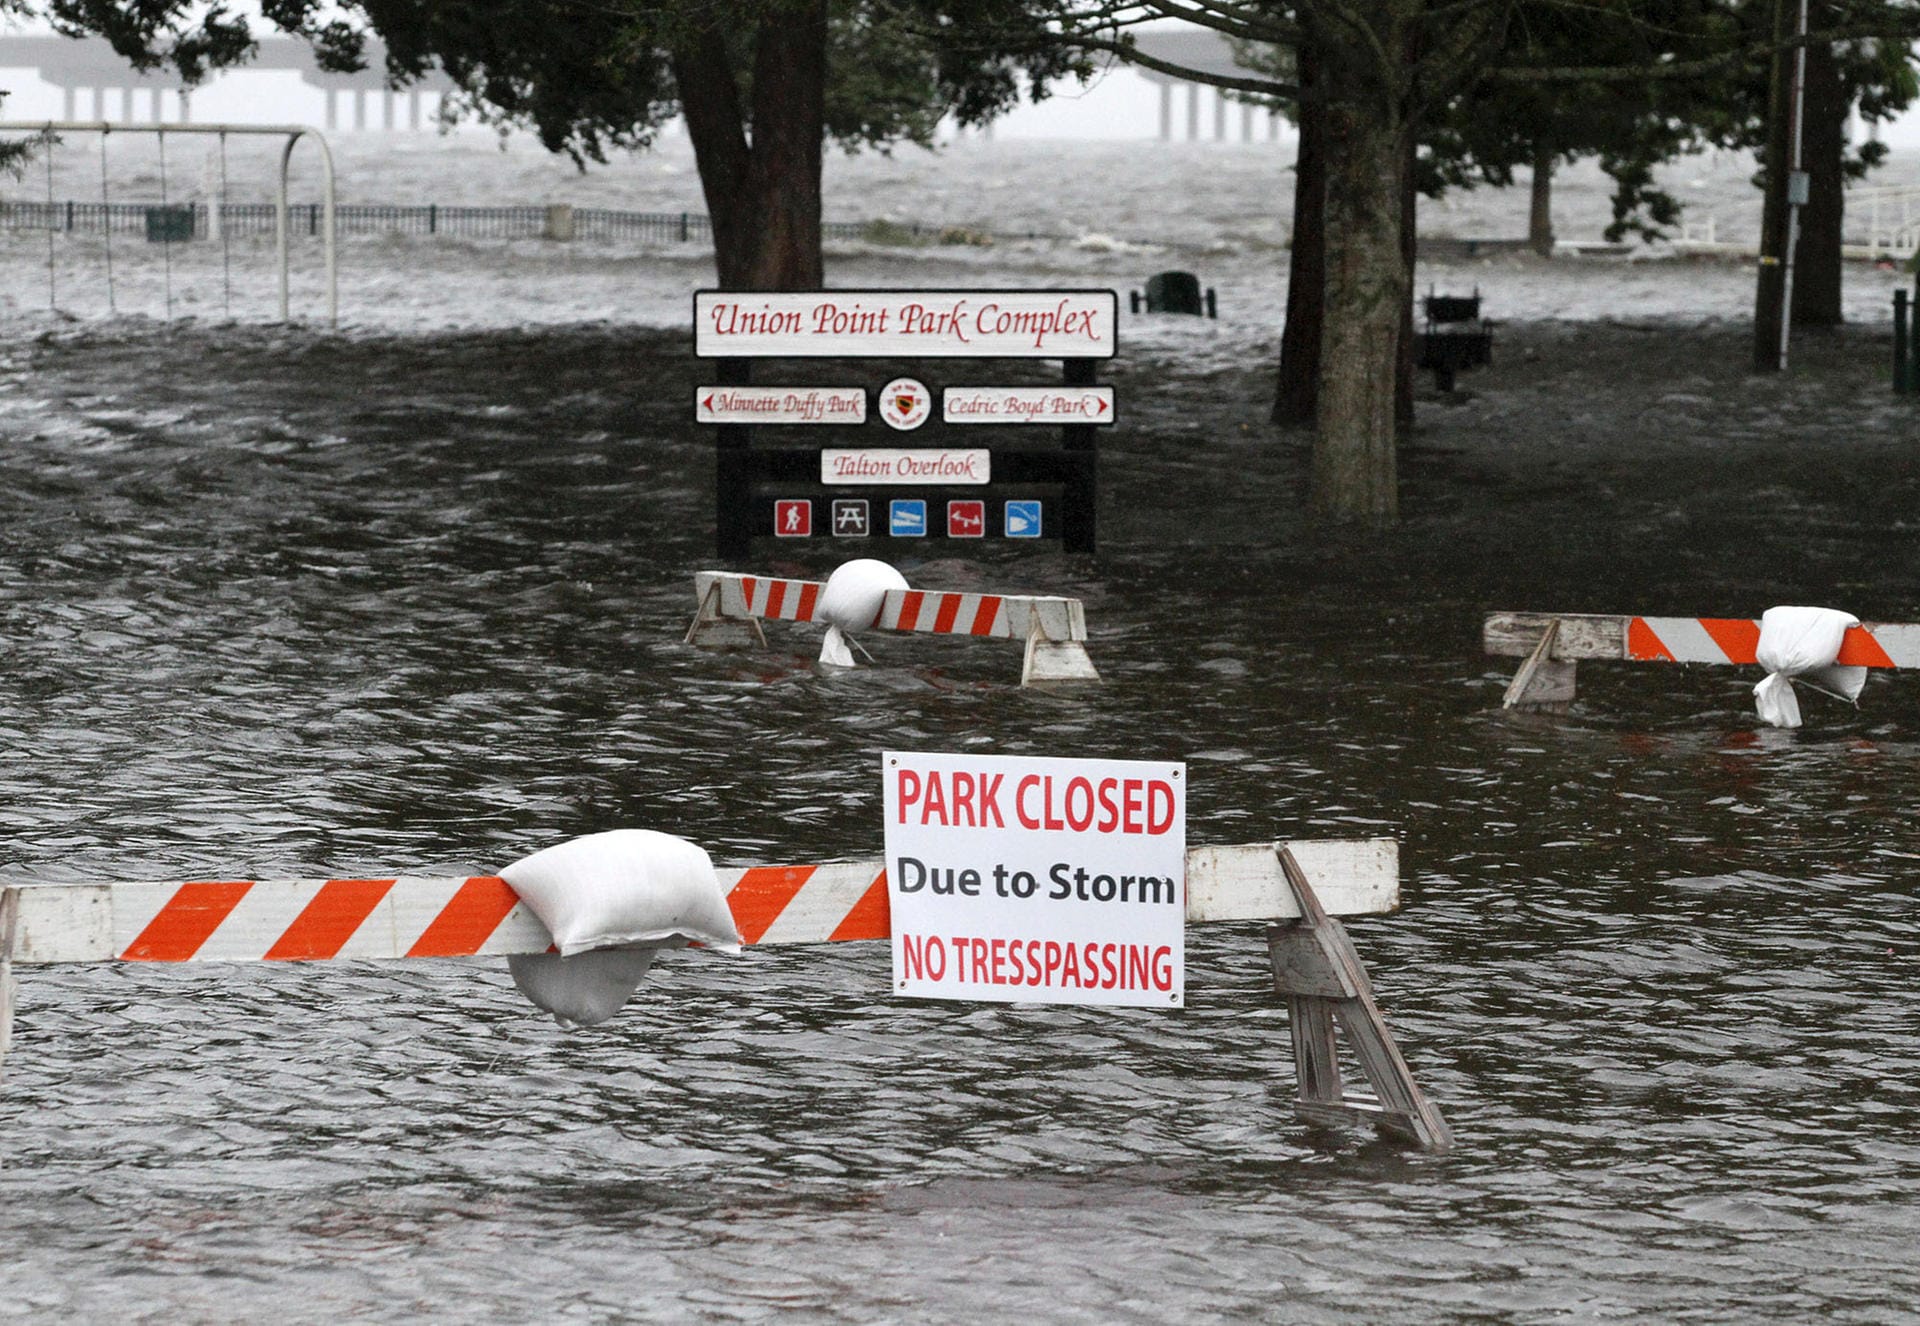 Der Union Point Park in New Bern: Hier steht alles unter Wasser, der Park ist vorübergehend geschlossen worden.